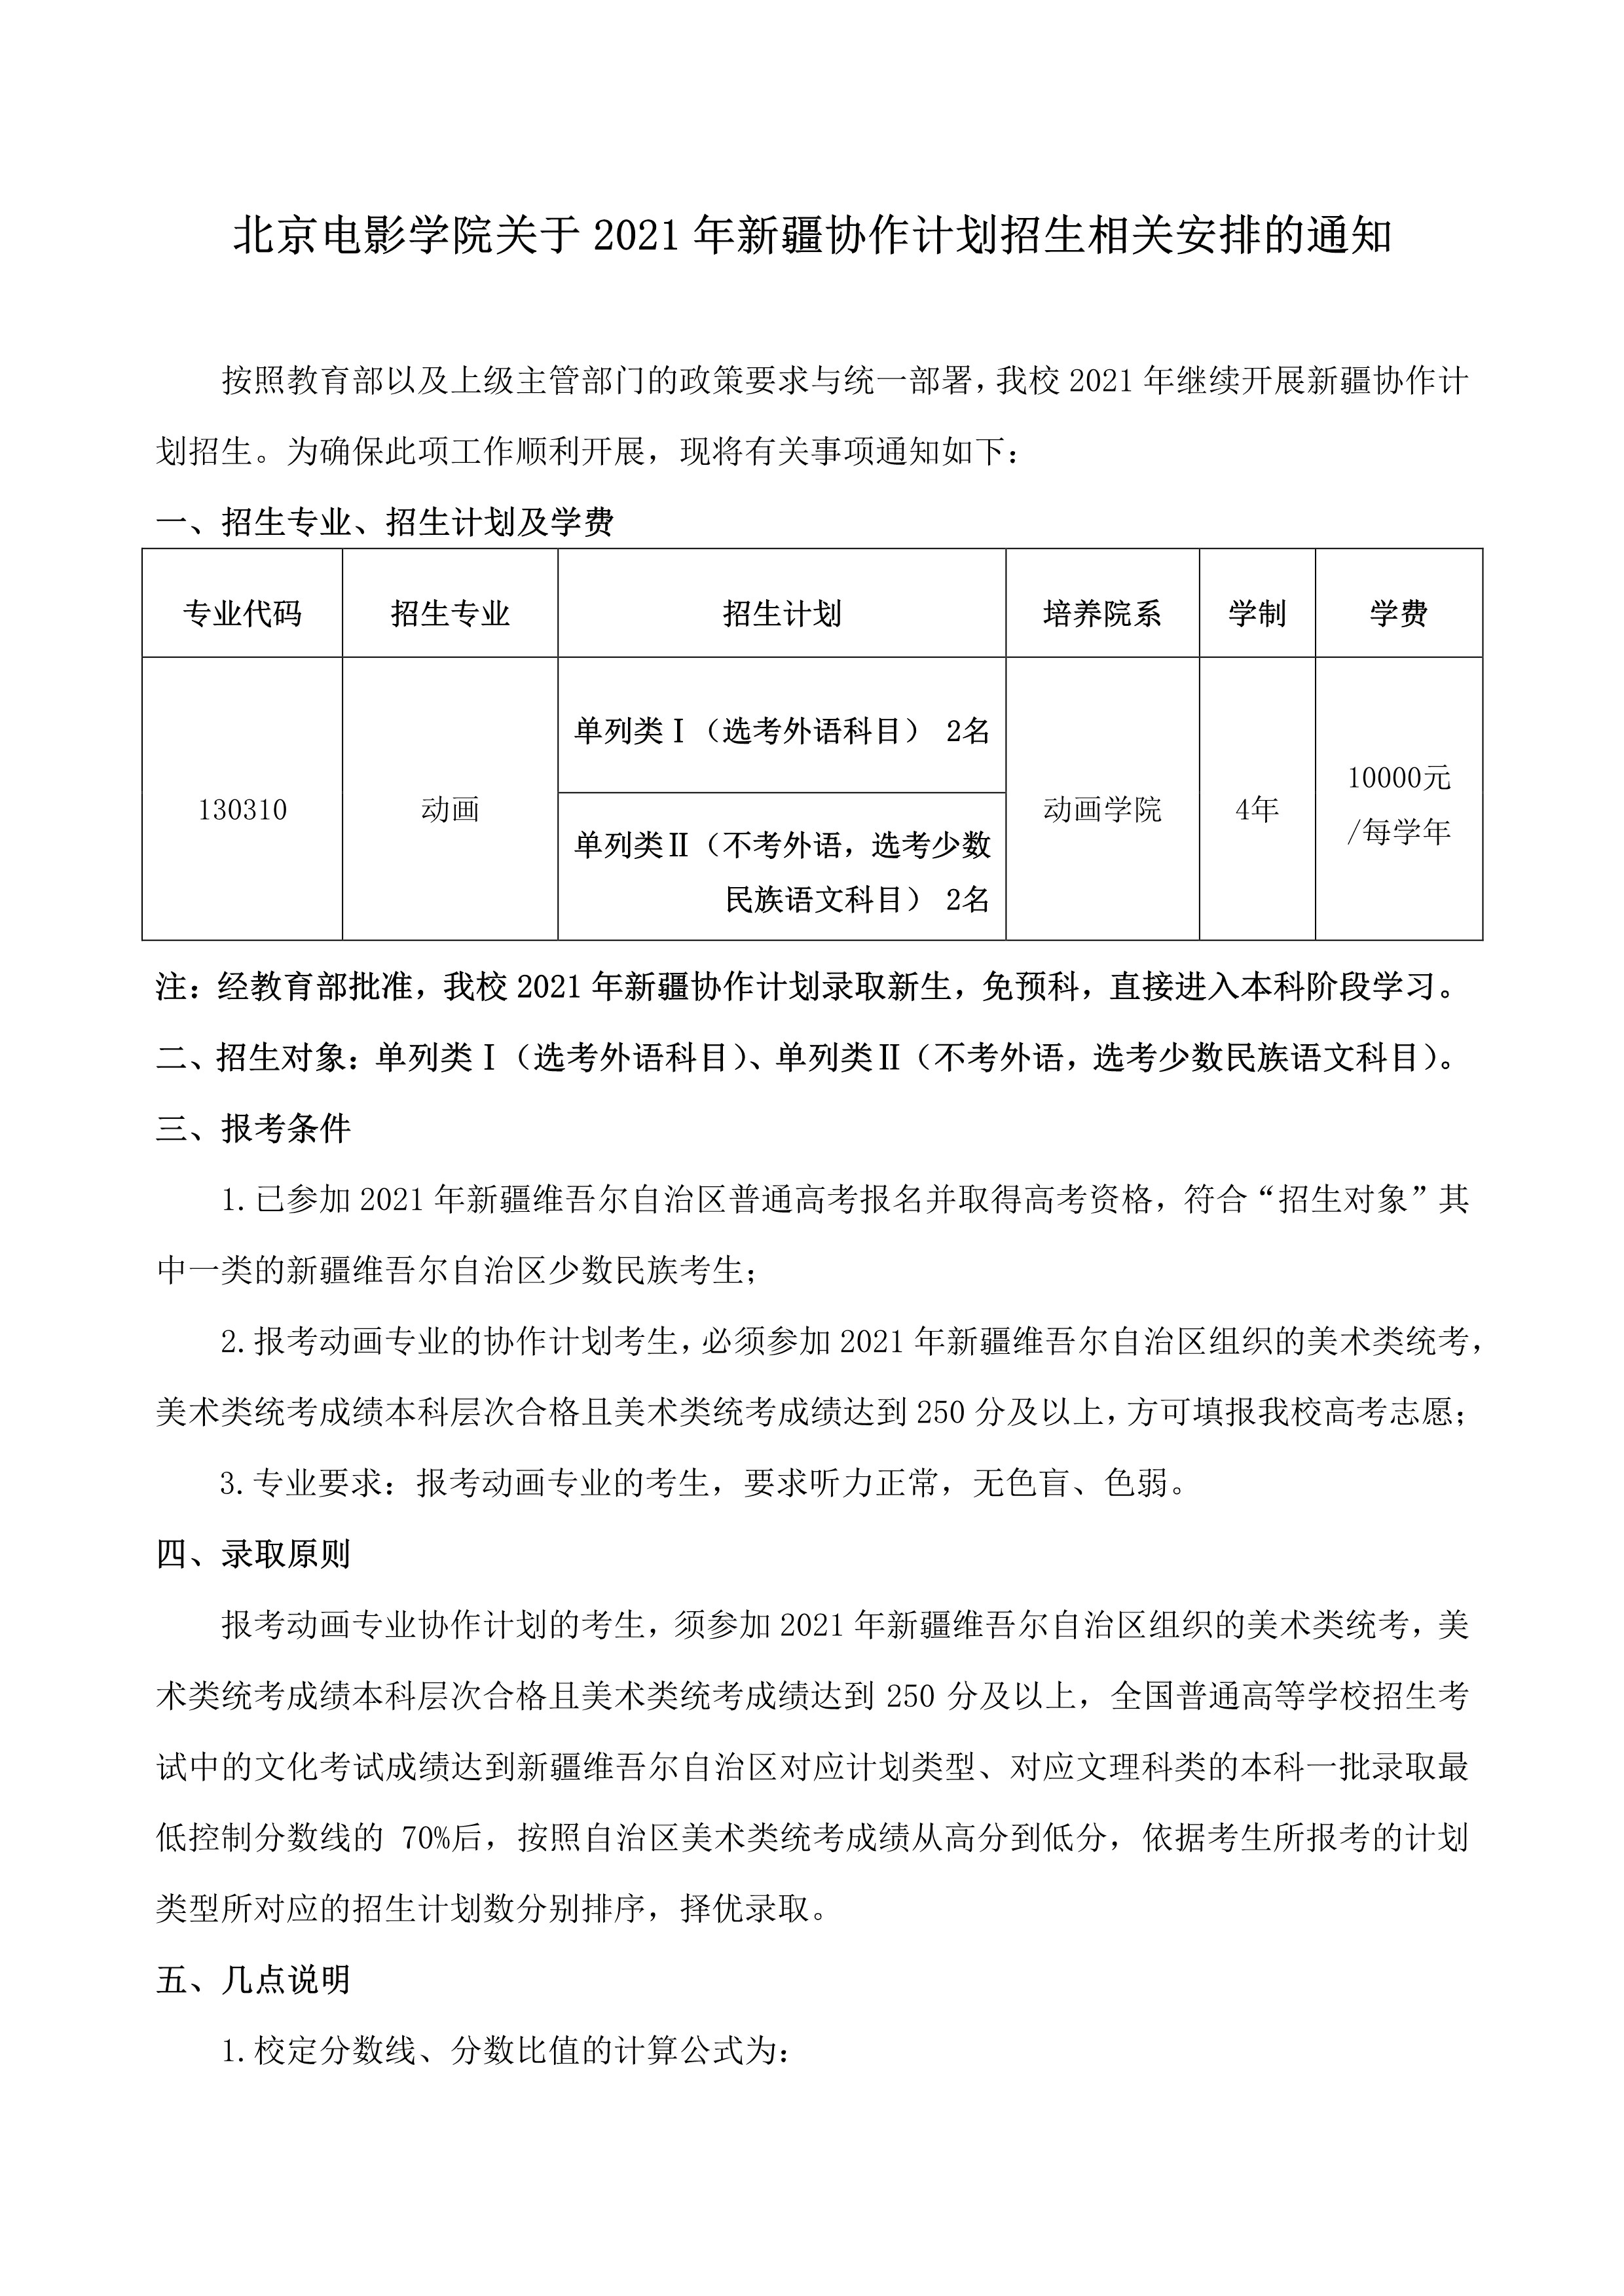 北京电影学院关于2021年新疆协作计划招生相关安排的通知_1.jpg